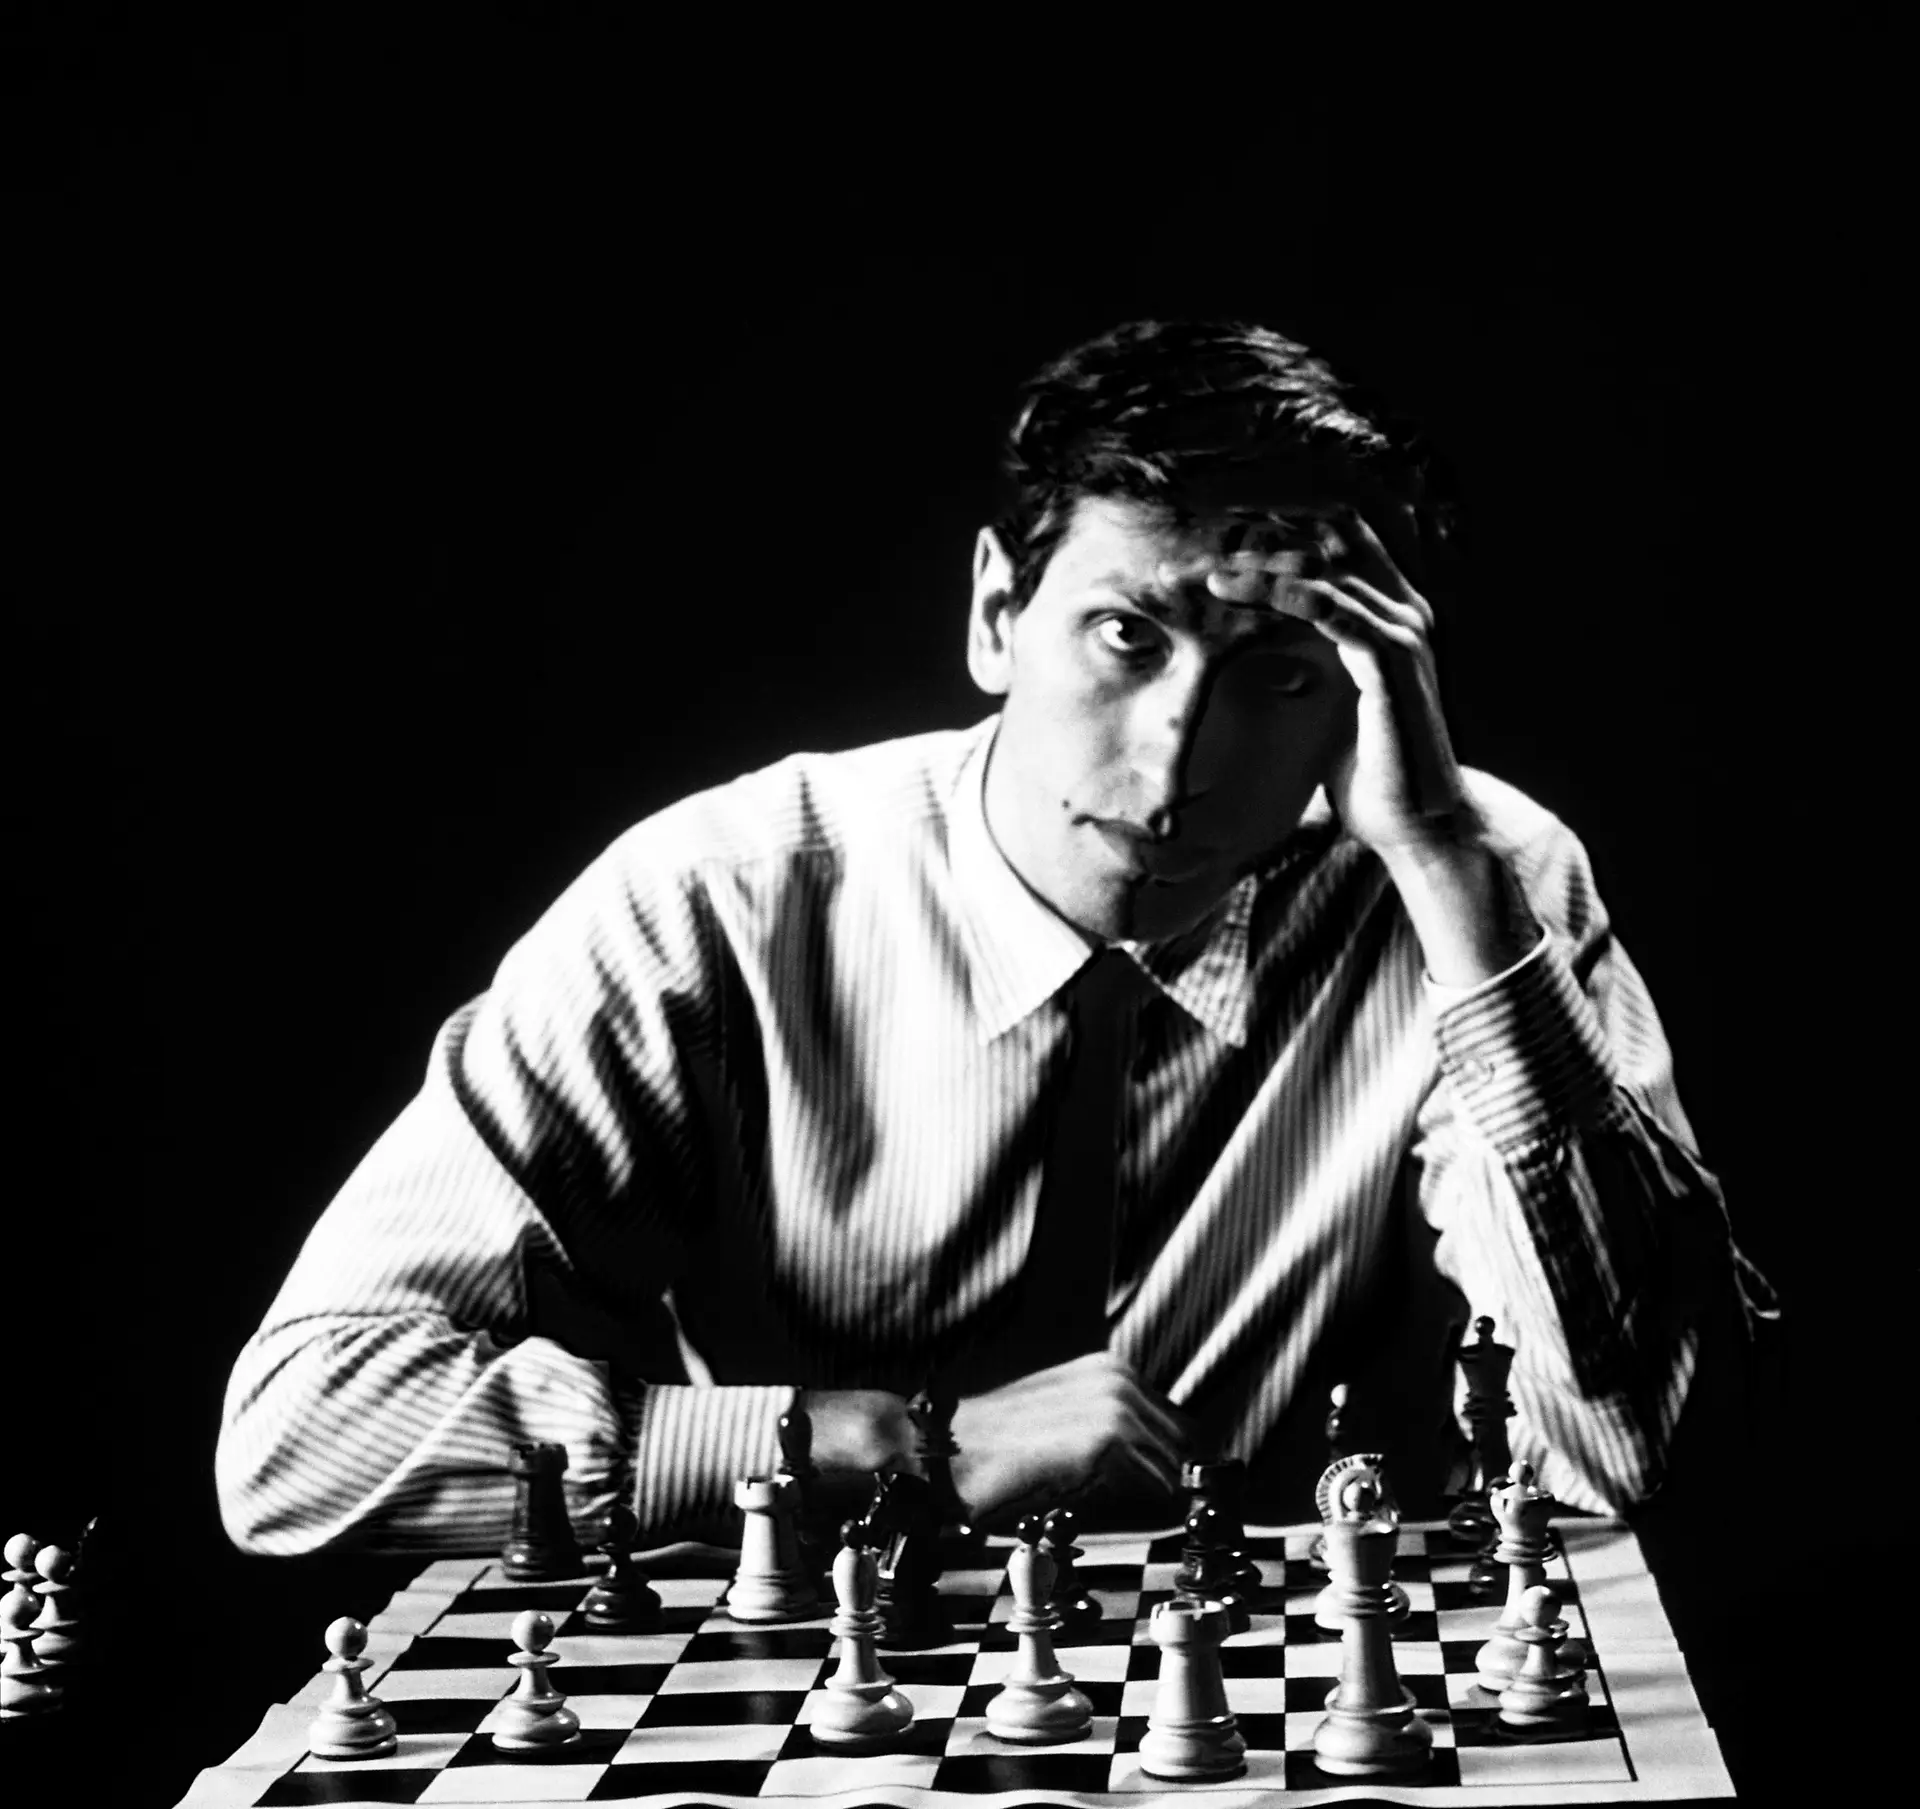 Xadrez Arte: Sobre livros e Bobby Fischer, claro!